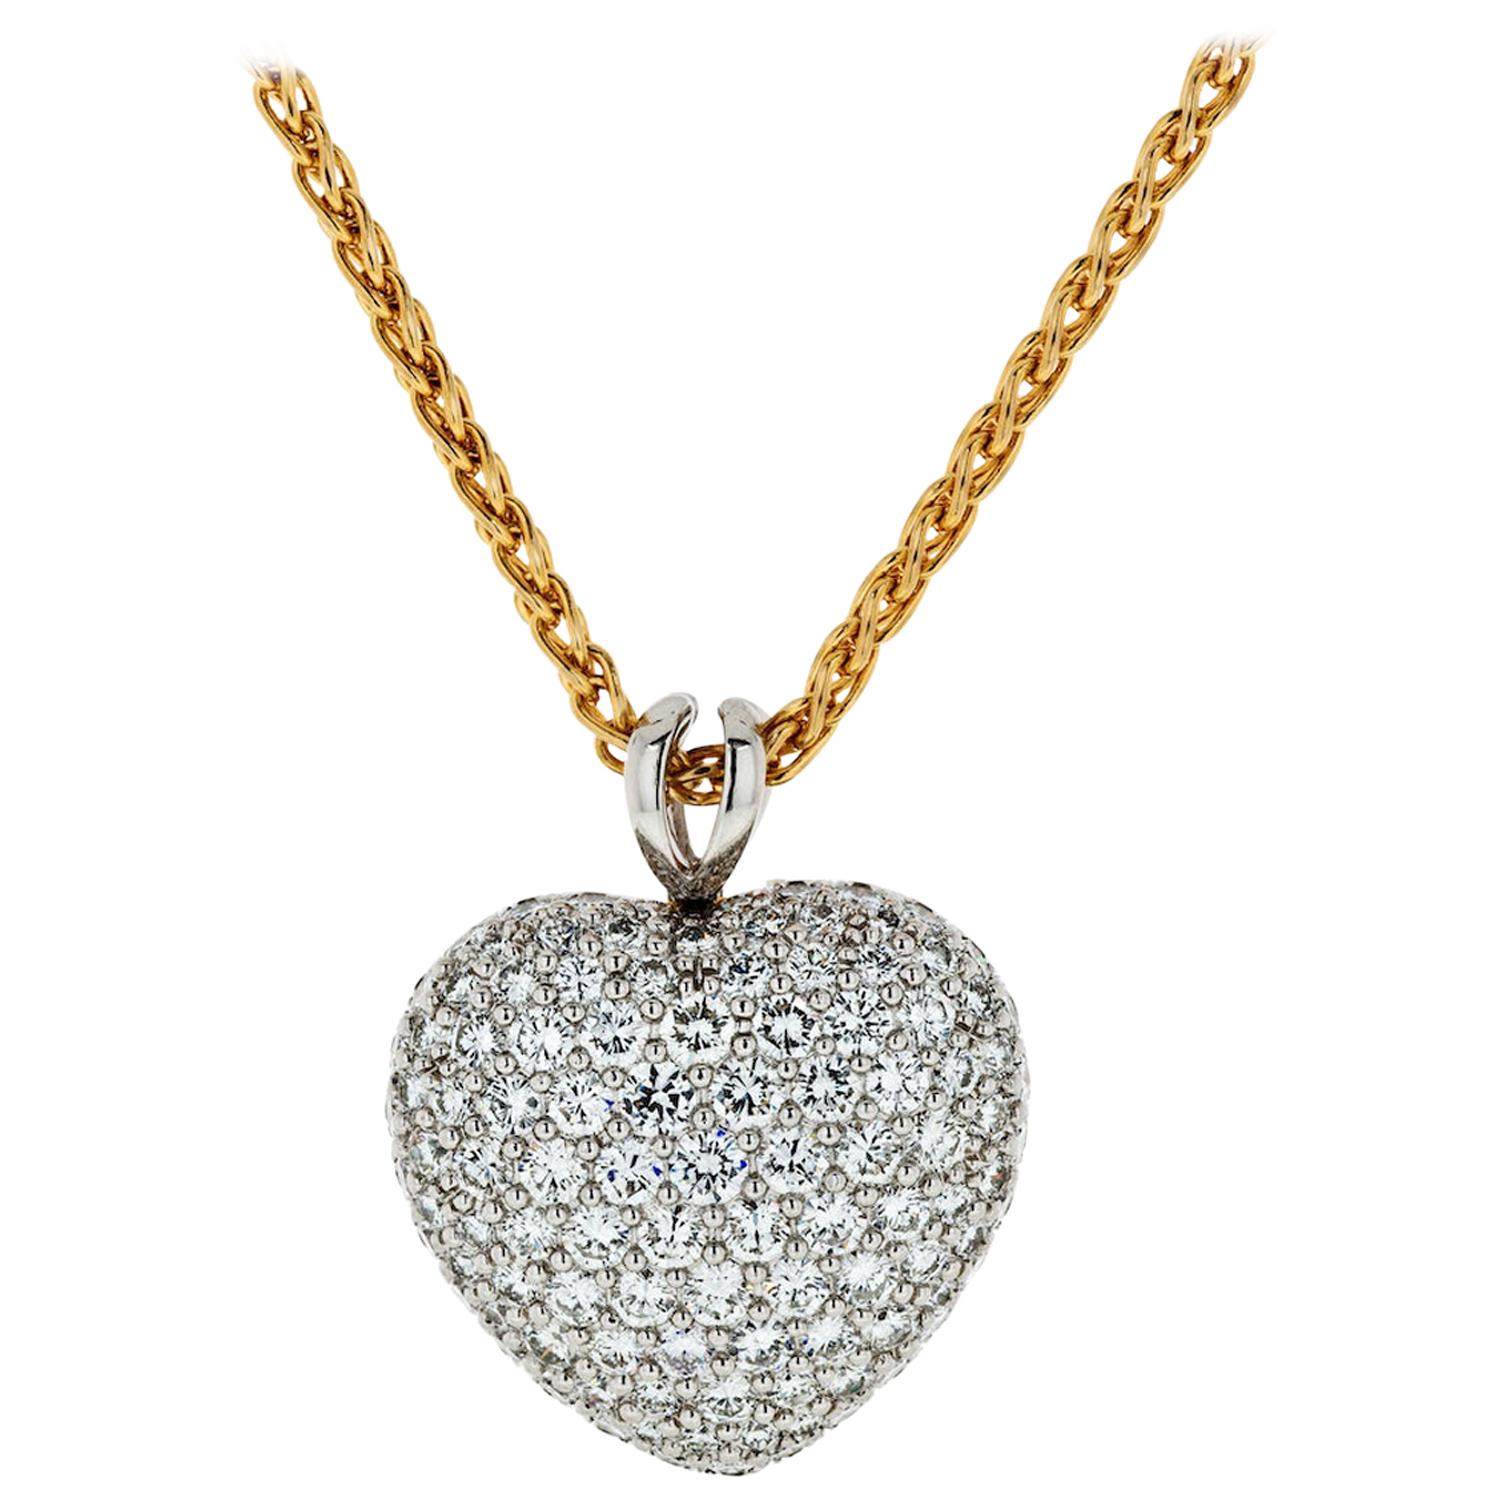 Kurt Wayne Platinum & 18k Yellow Gold 5.50 Carat Diamond Heart Pendant Necklace